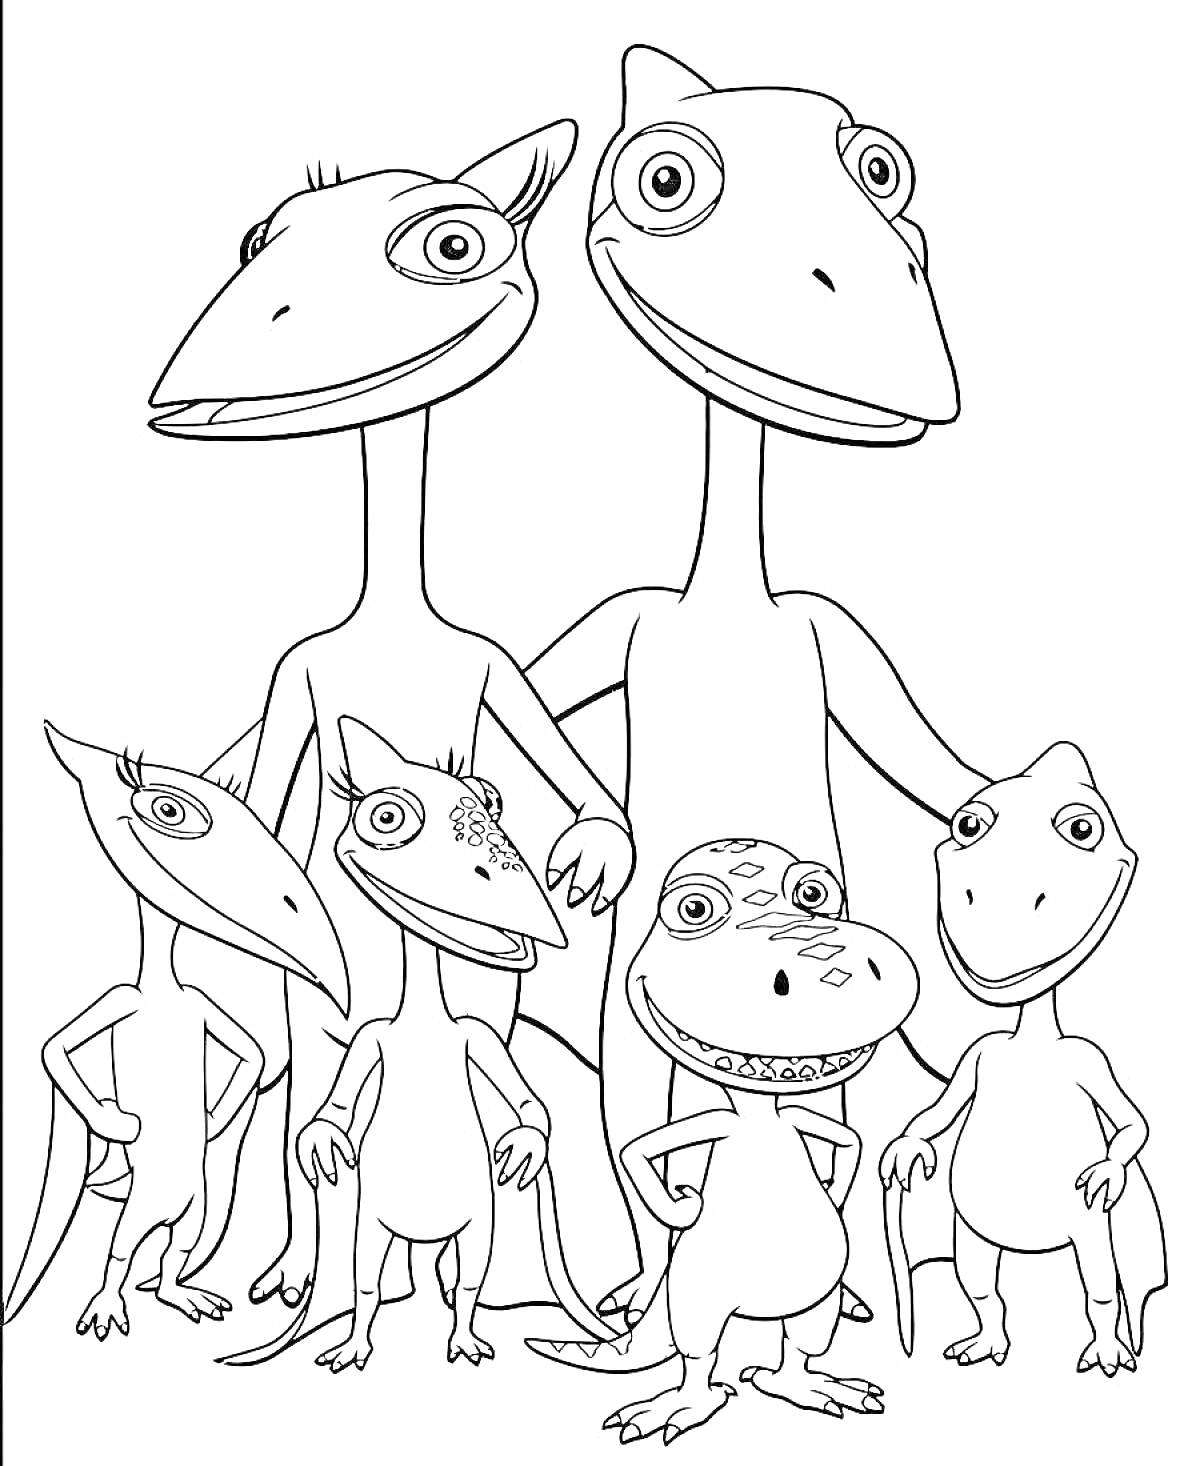 Группа динозавров из Поезда Динозавров (шесть динозавров разного размера)